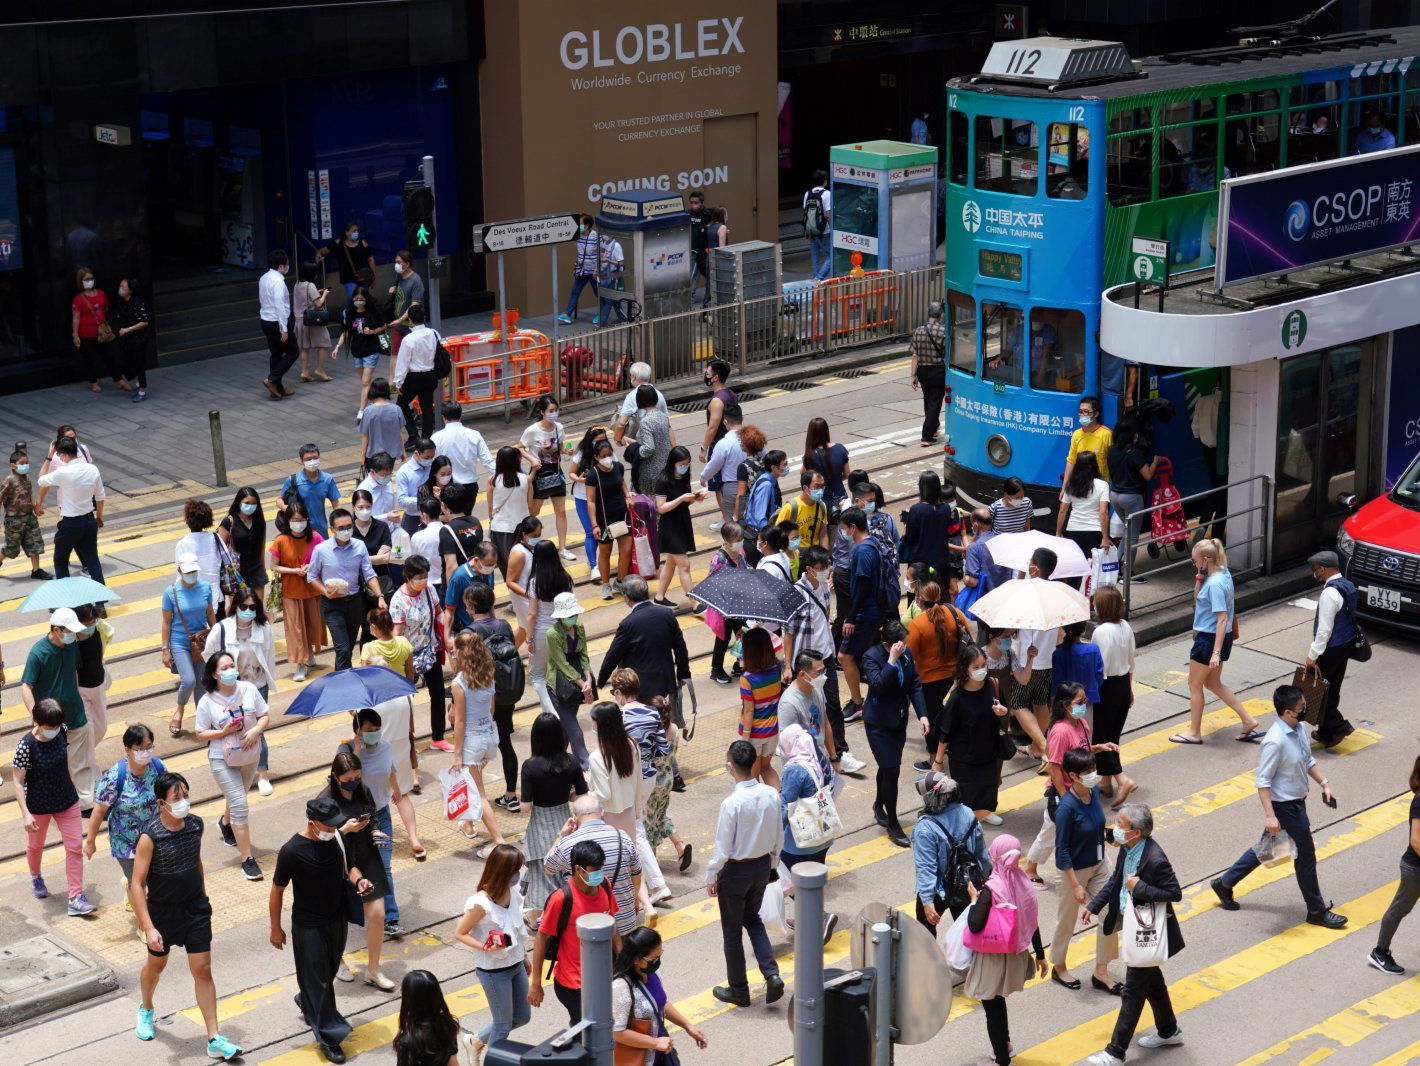 香港口罩令有效期延长至3月8日